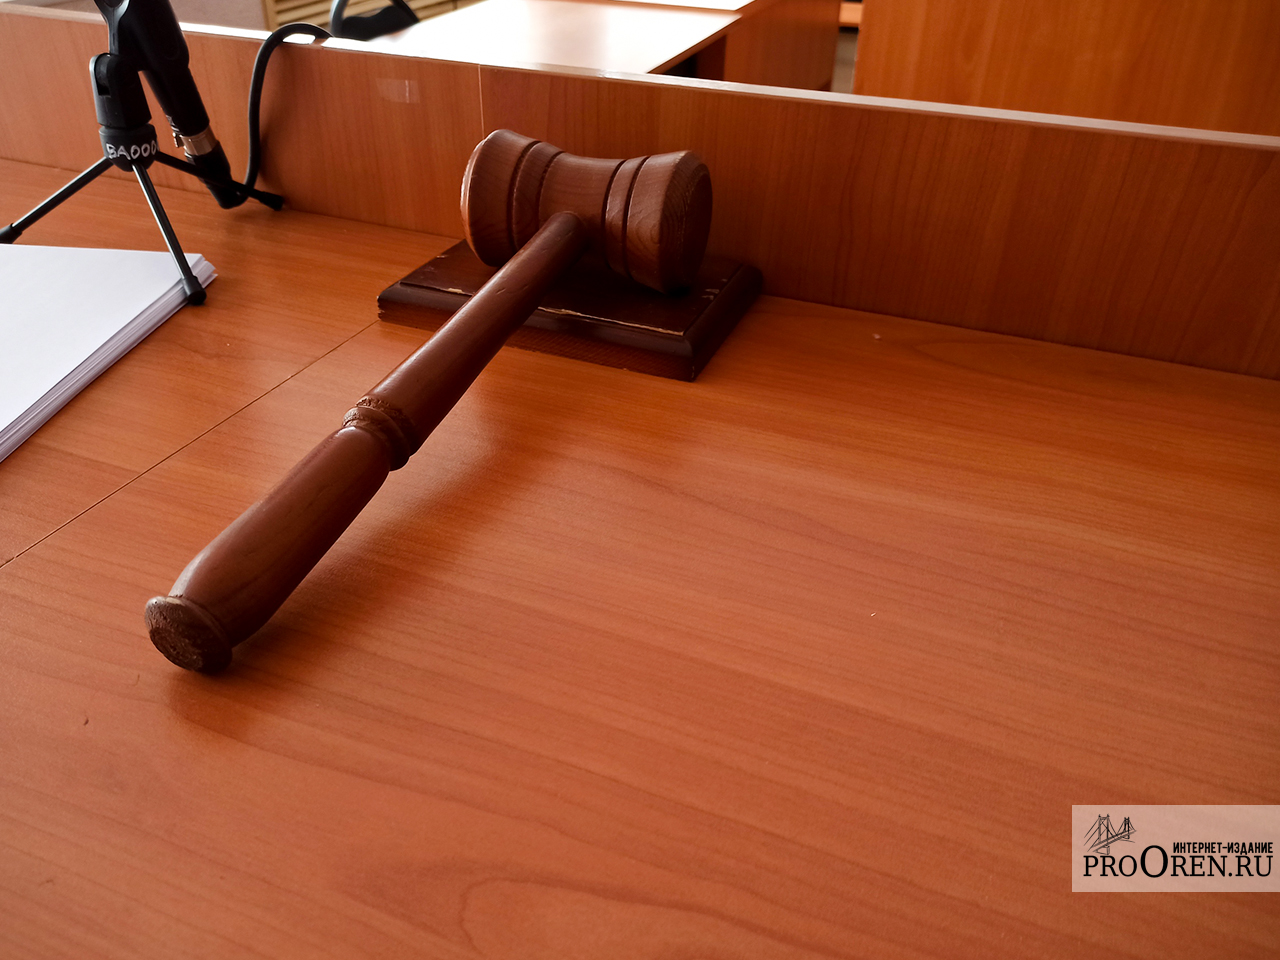 В Орске суд признал законными обыски в домах некоторых жителей